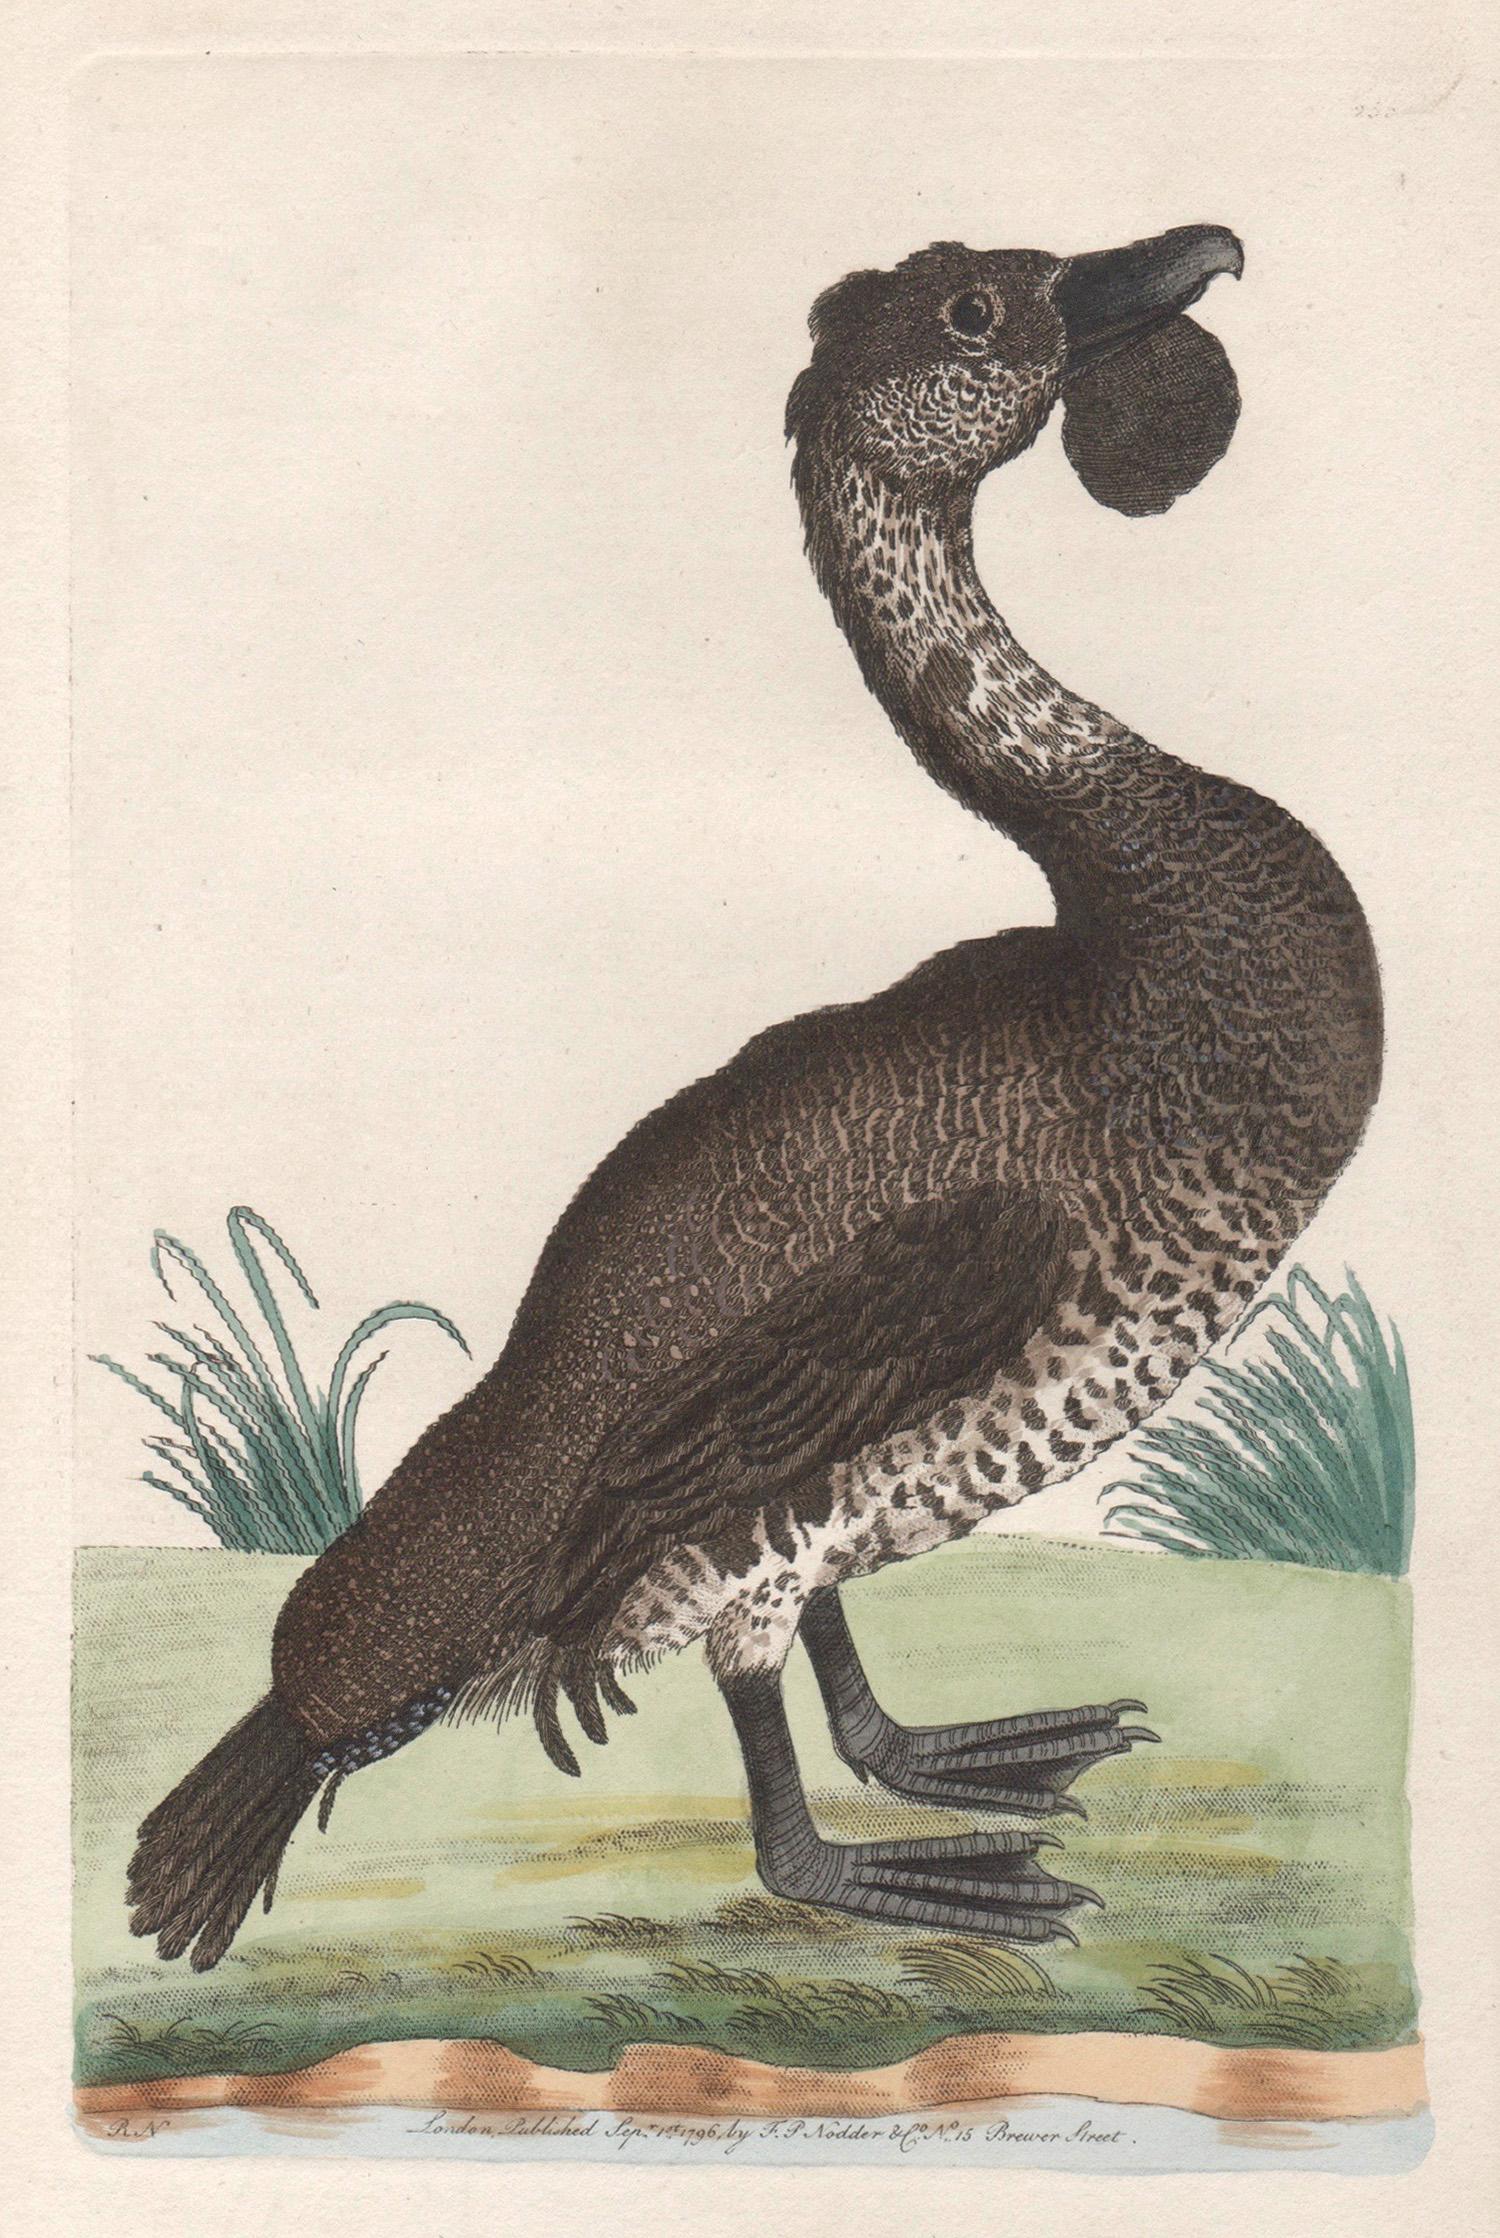 Animal Print Richard Polydore Nodder - The Lobated Musk Duck, Australie, gravure avec coloration à la main originale, 1795